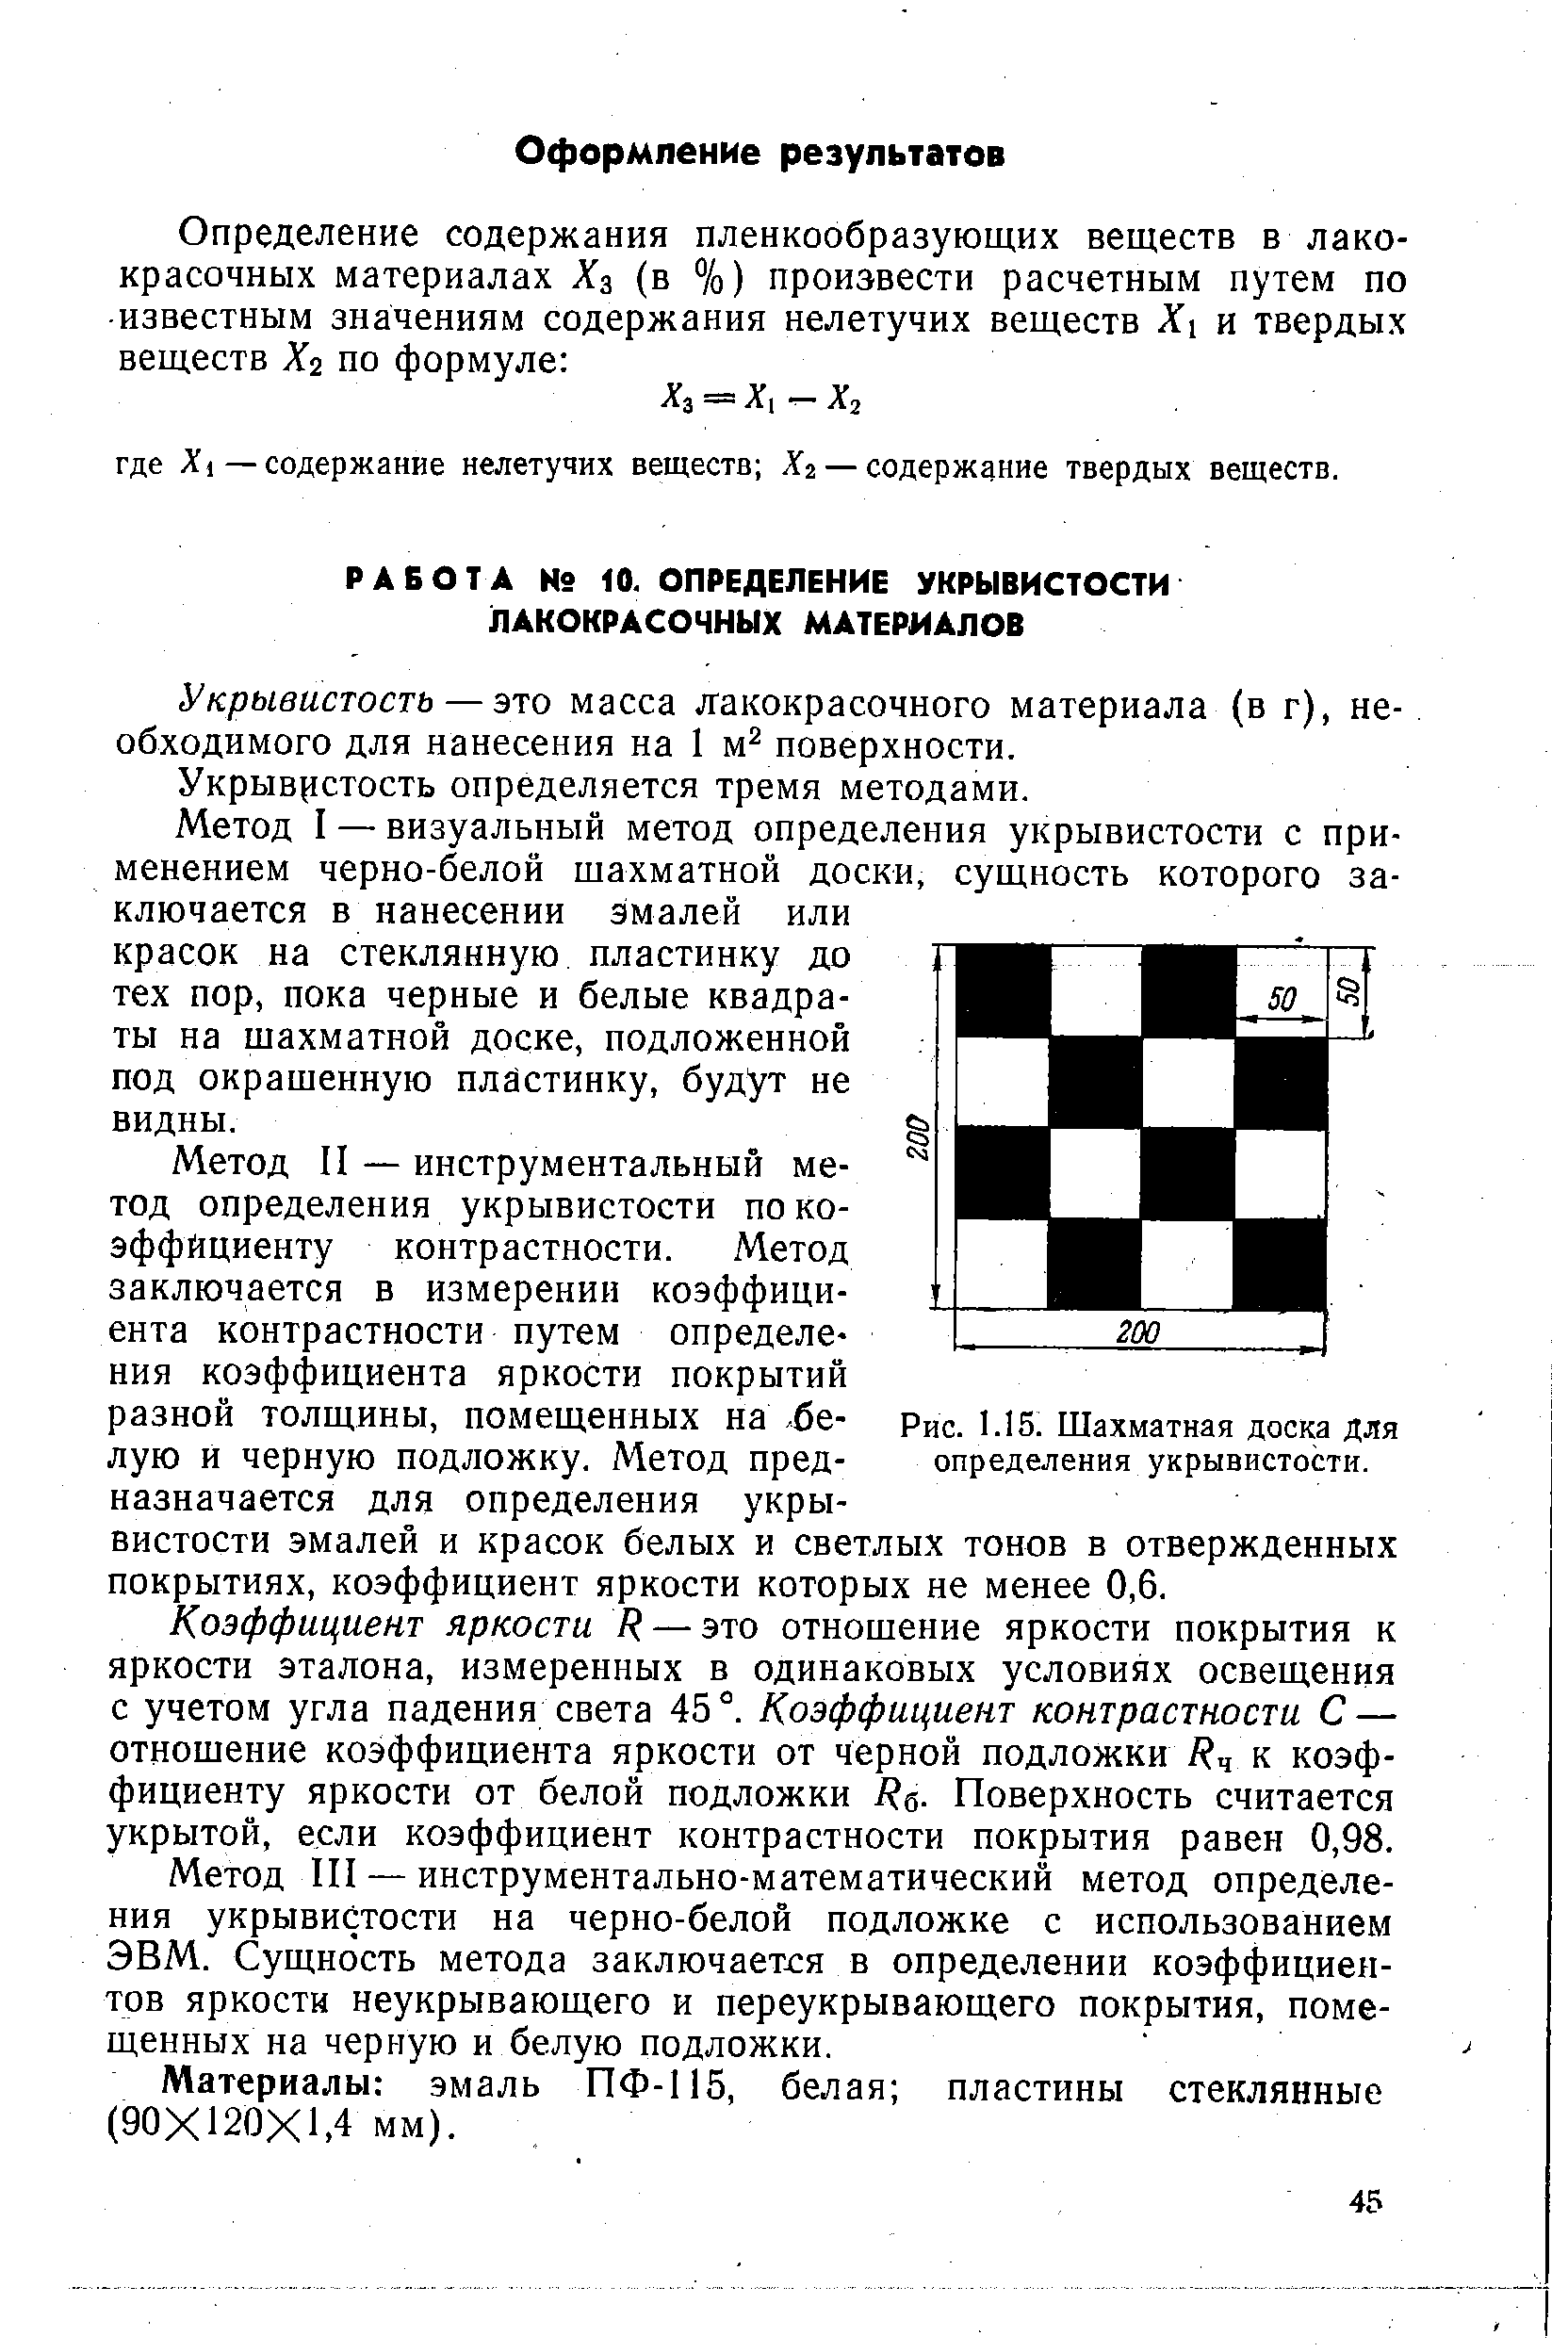 Рис. 1.15. Шахматная доска для определения укрывистости.
